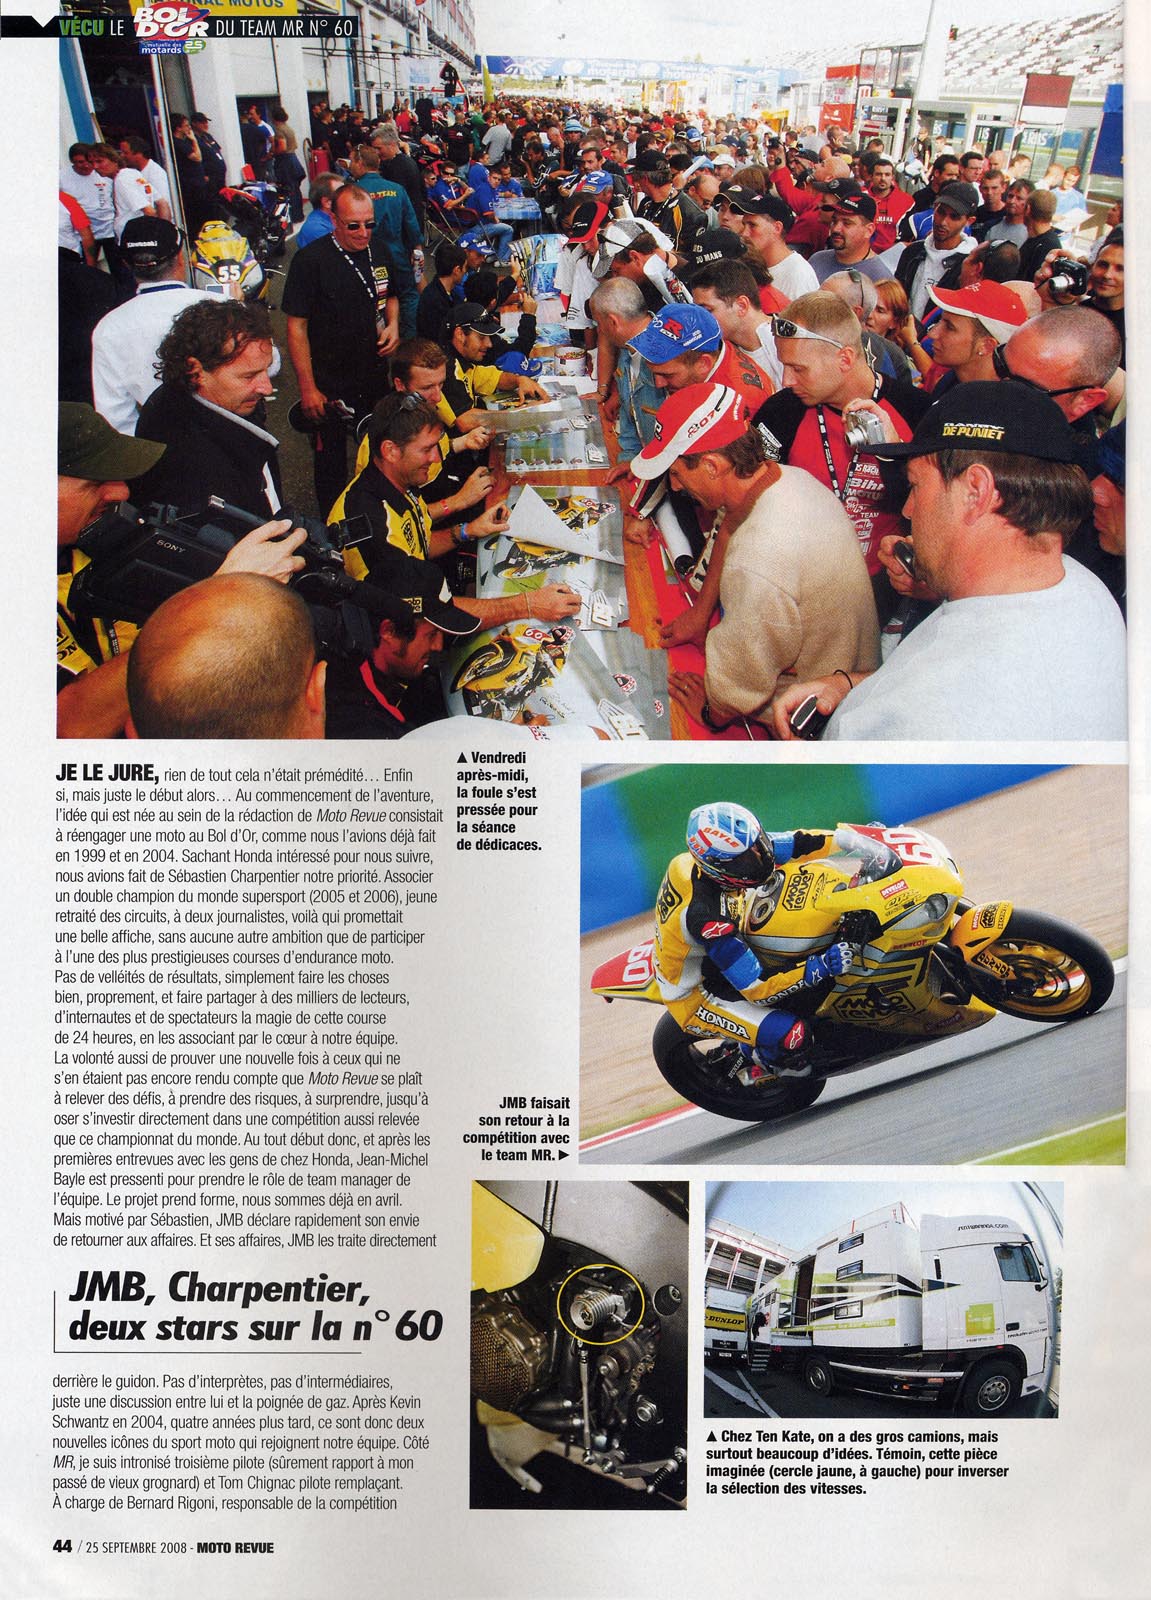 La page 44 du Moto Revue 3825 où on trouve un excellent papier de Thierry Traccan sur cette épreuve du Bol d'Or 2008